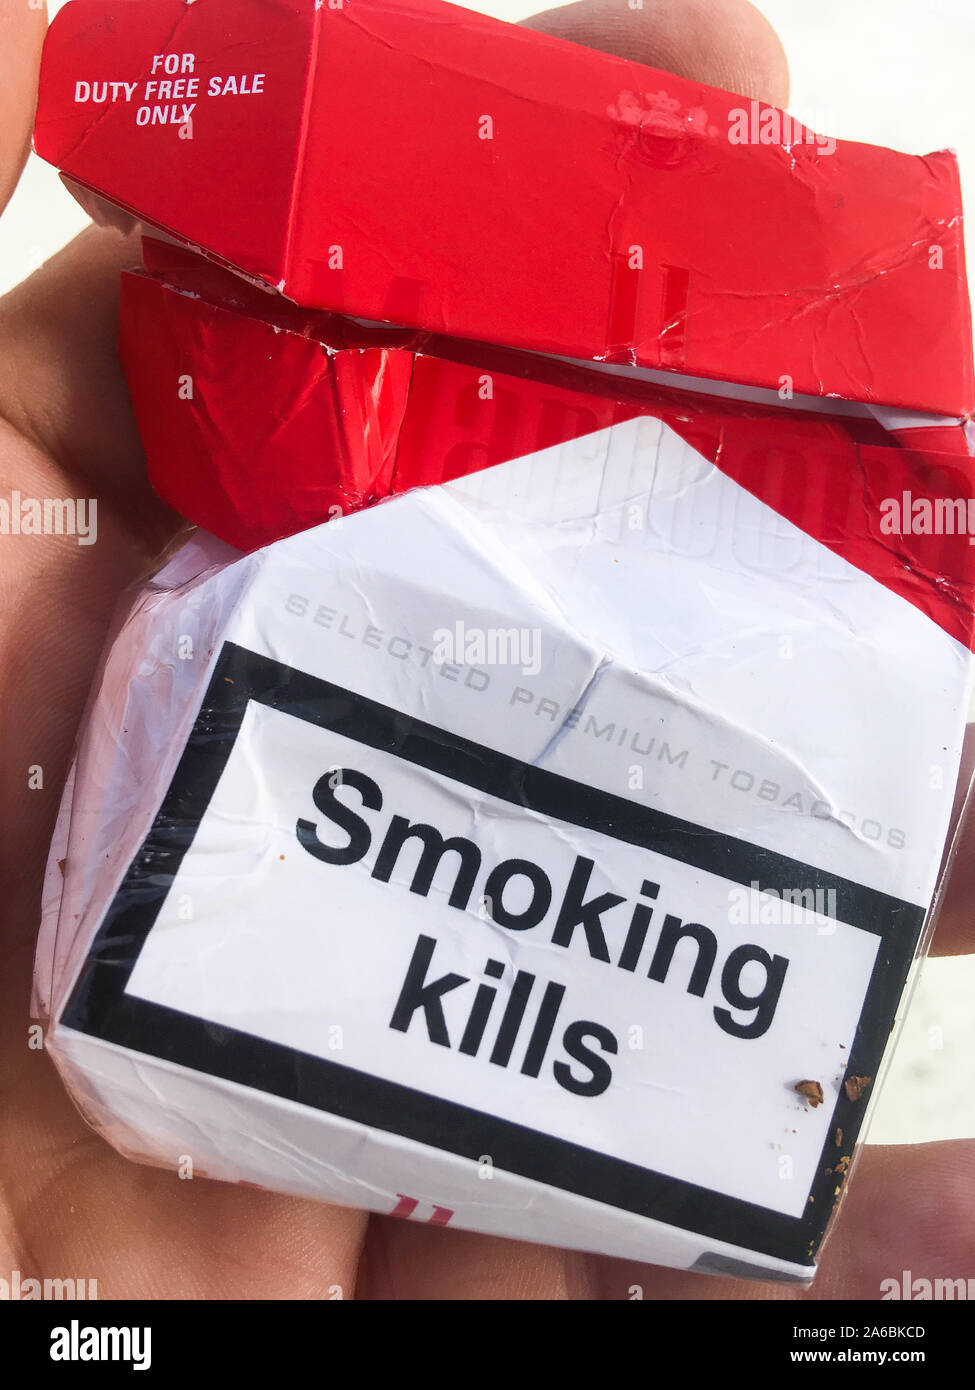 Par contre le tabac à rouler en paquet de Marlboro t30 prises sur fond  blanc Photo Stock - Alamy